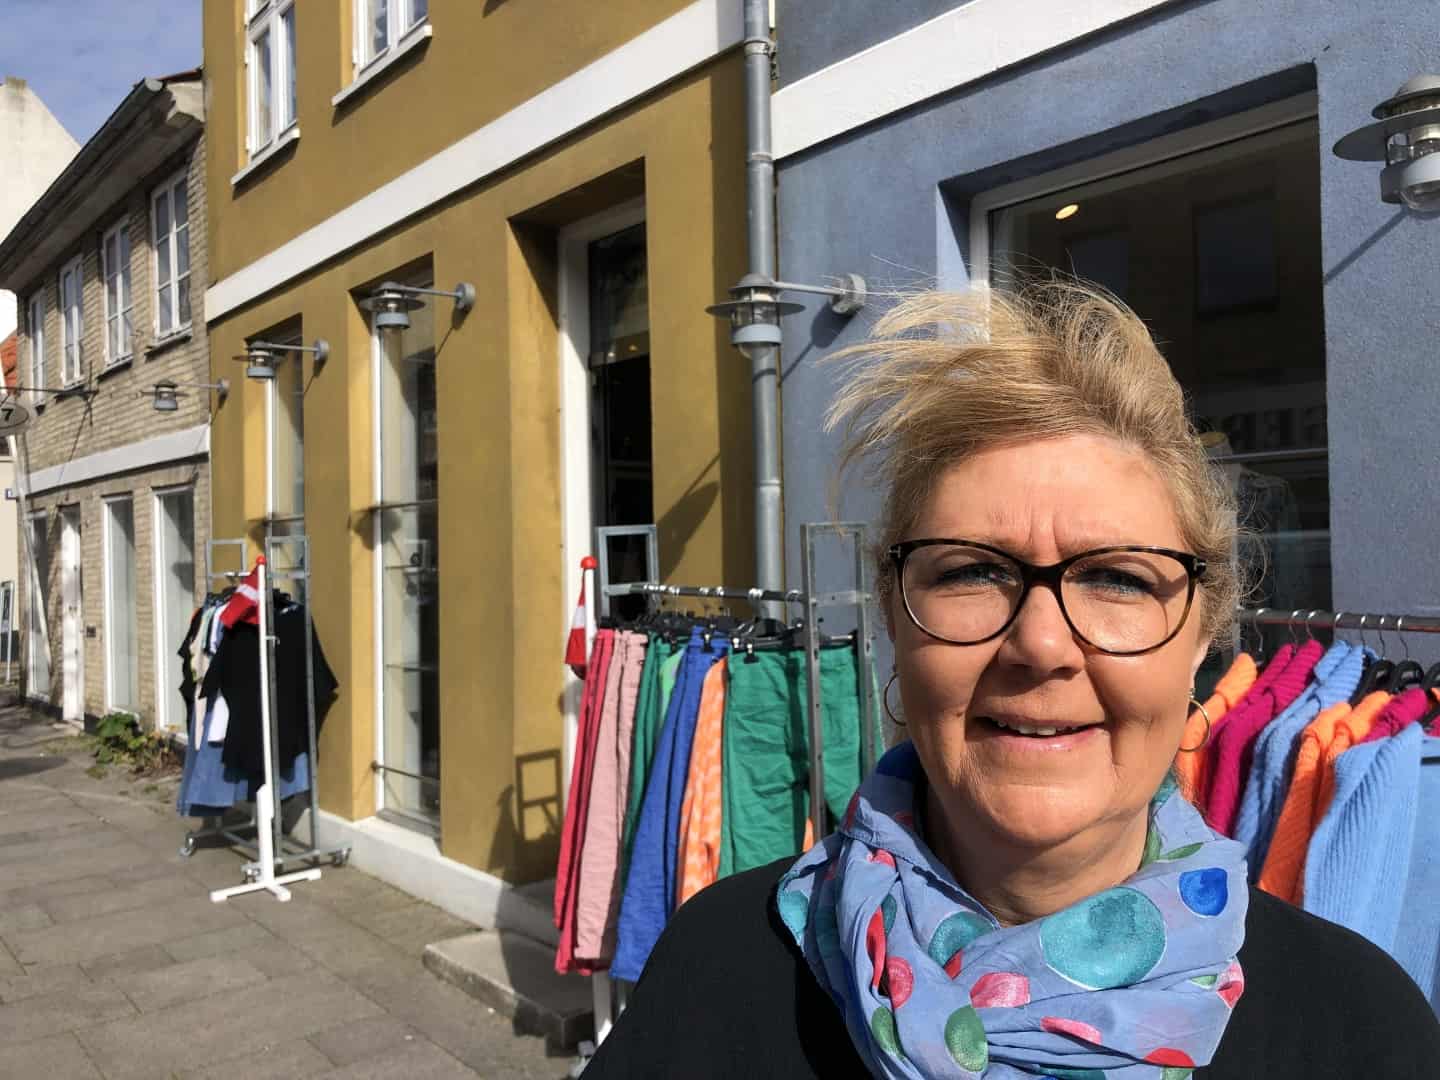 svar på Mads åbner butik nummer 11: Glæde og farver og i alle størrelser - også til kvinder med ægte former | fyens.dk